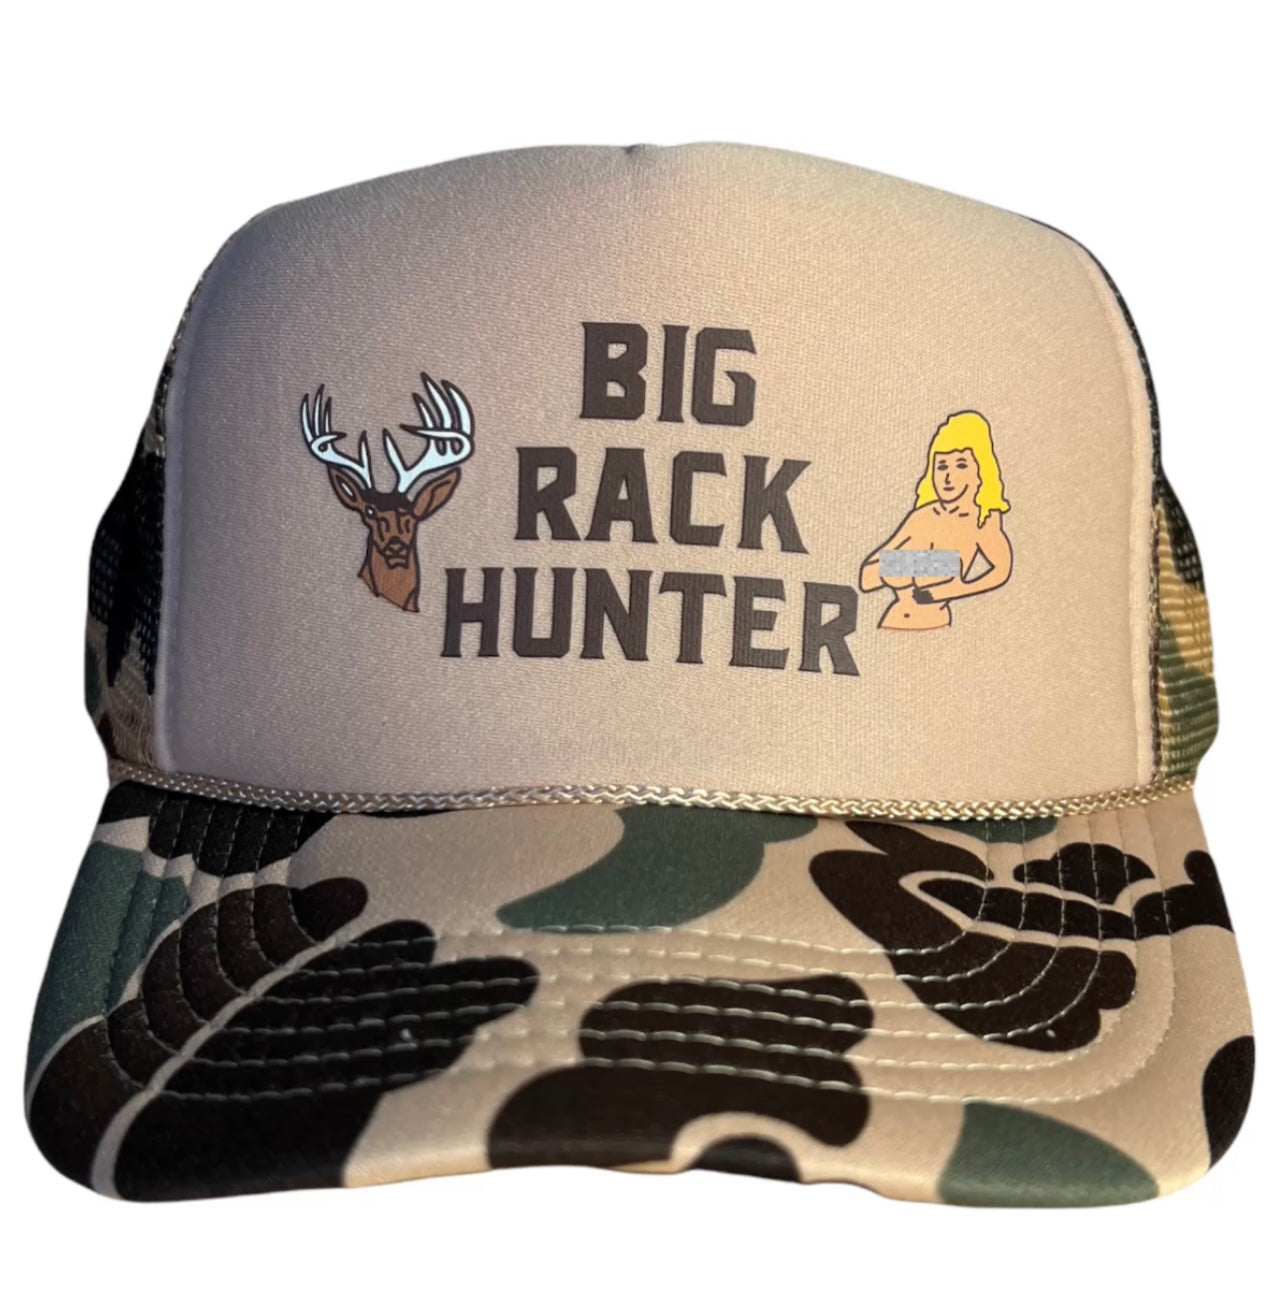 Big Rack Hunter Trucker Hat Funny Trucker Hat Camo – FunnyTruckerHats